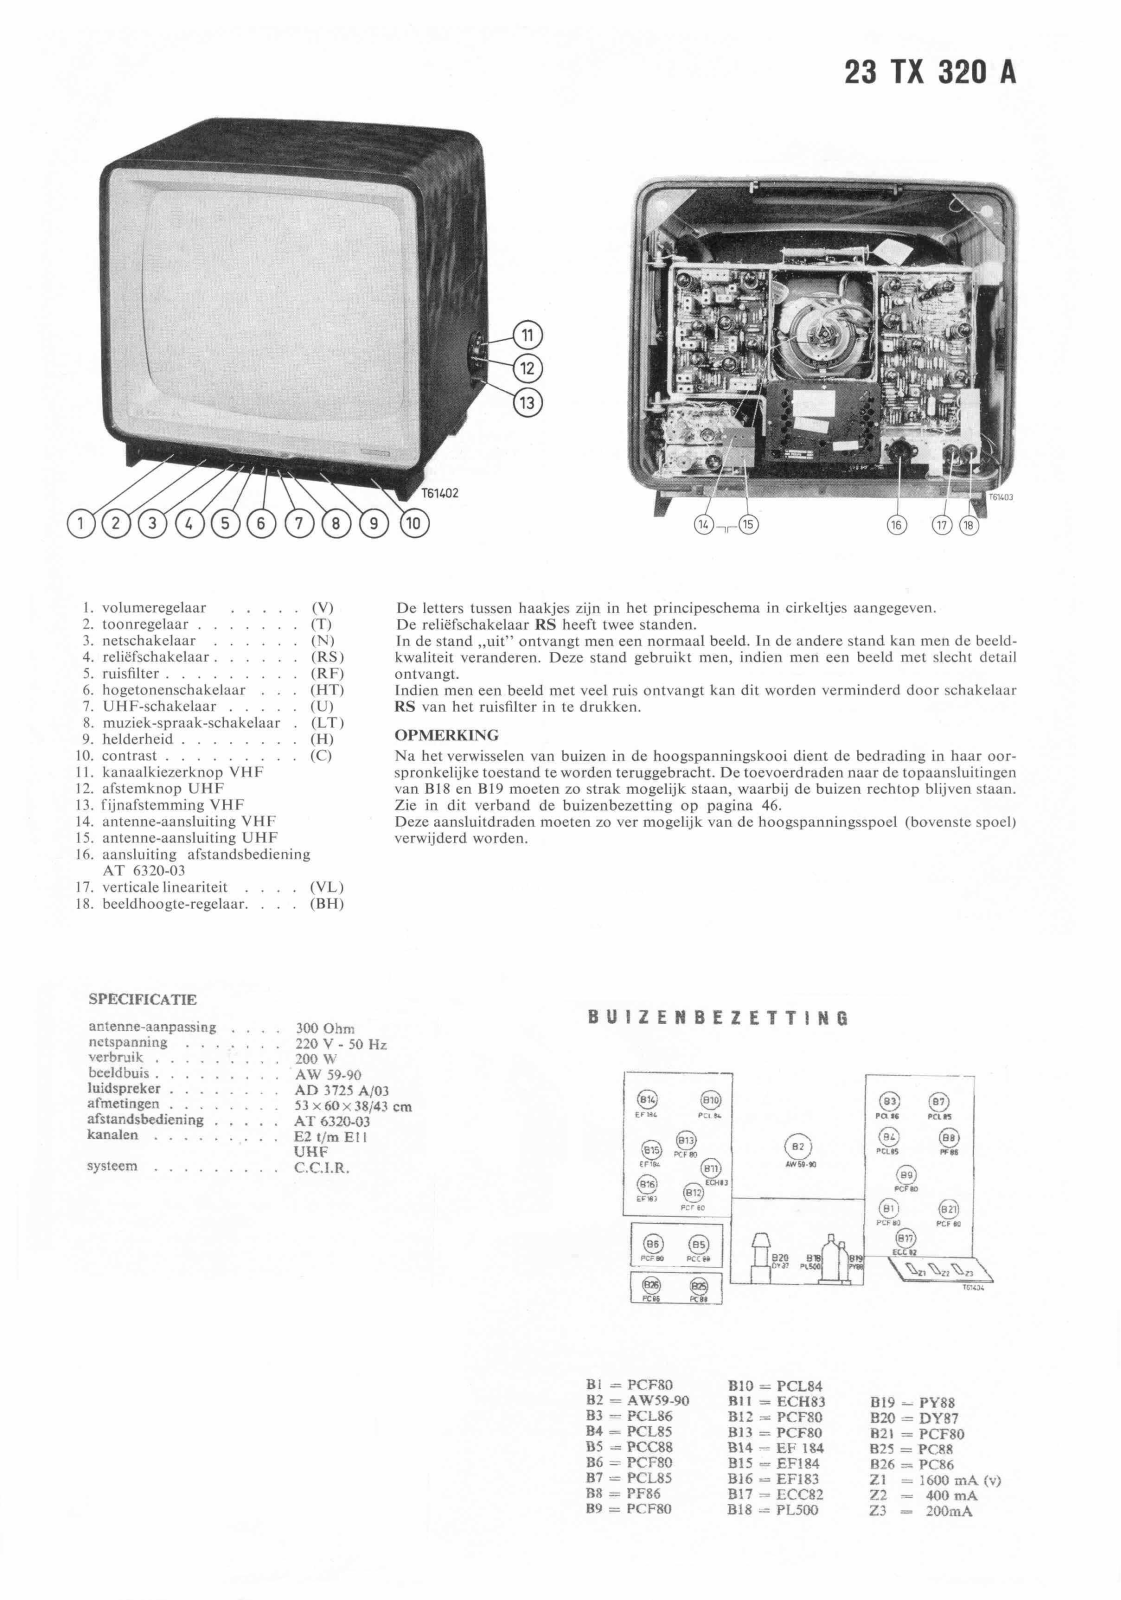 Philips 23TX320A Schematic